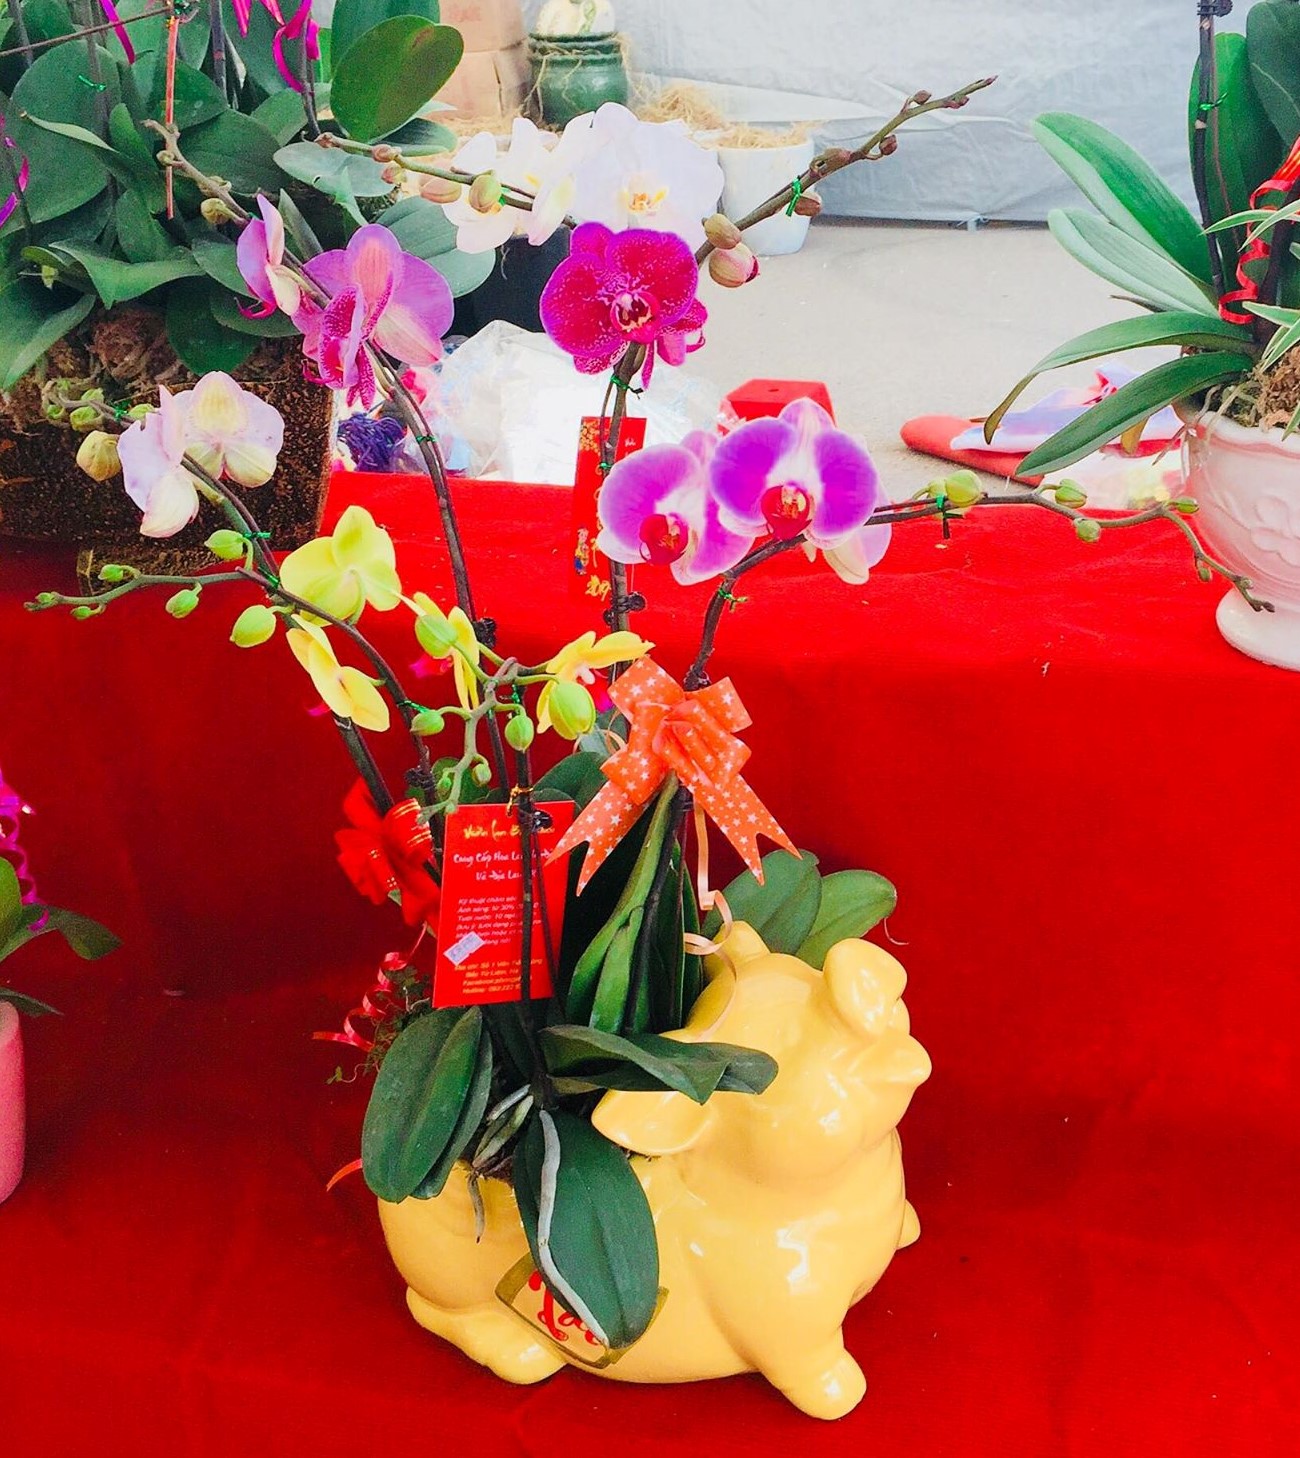 Hoa xuân Kỷ Hợi: Ngập tràn màu sắc